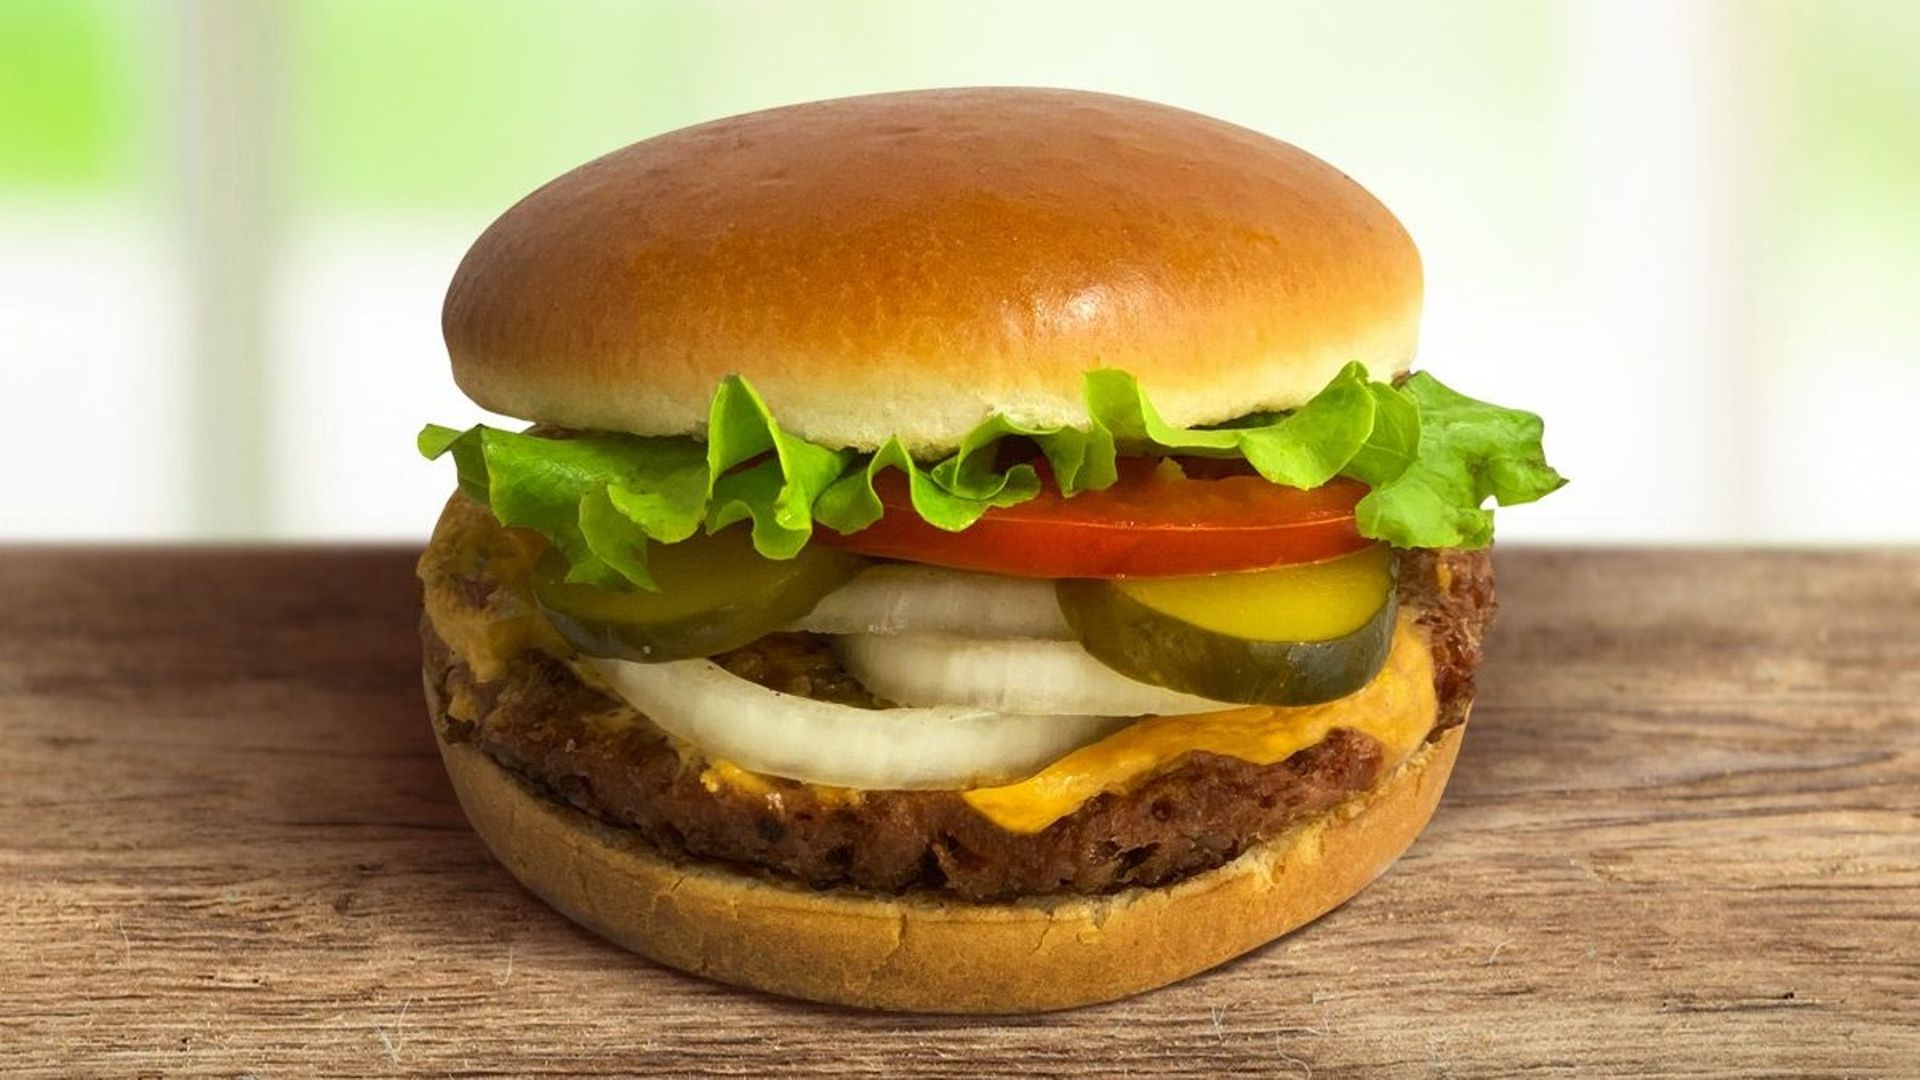 Le burger avec un steak végétal signé Beyond Meat disponible chez Steak 'n Shake.